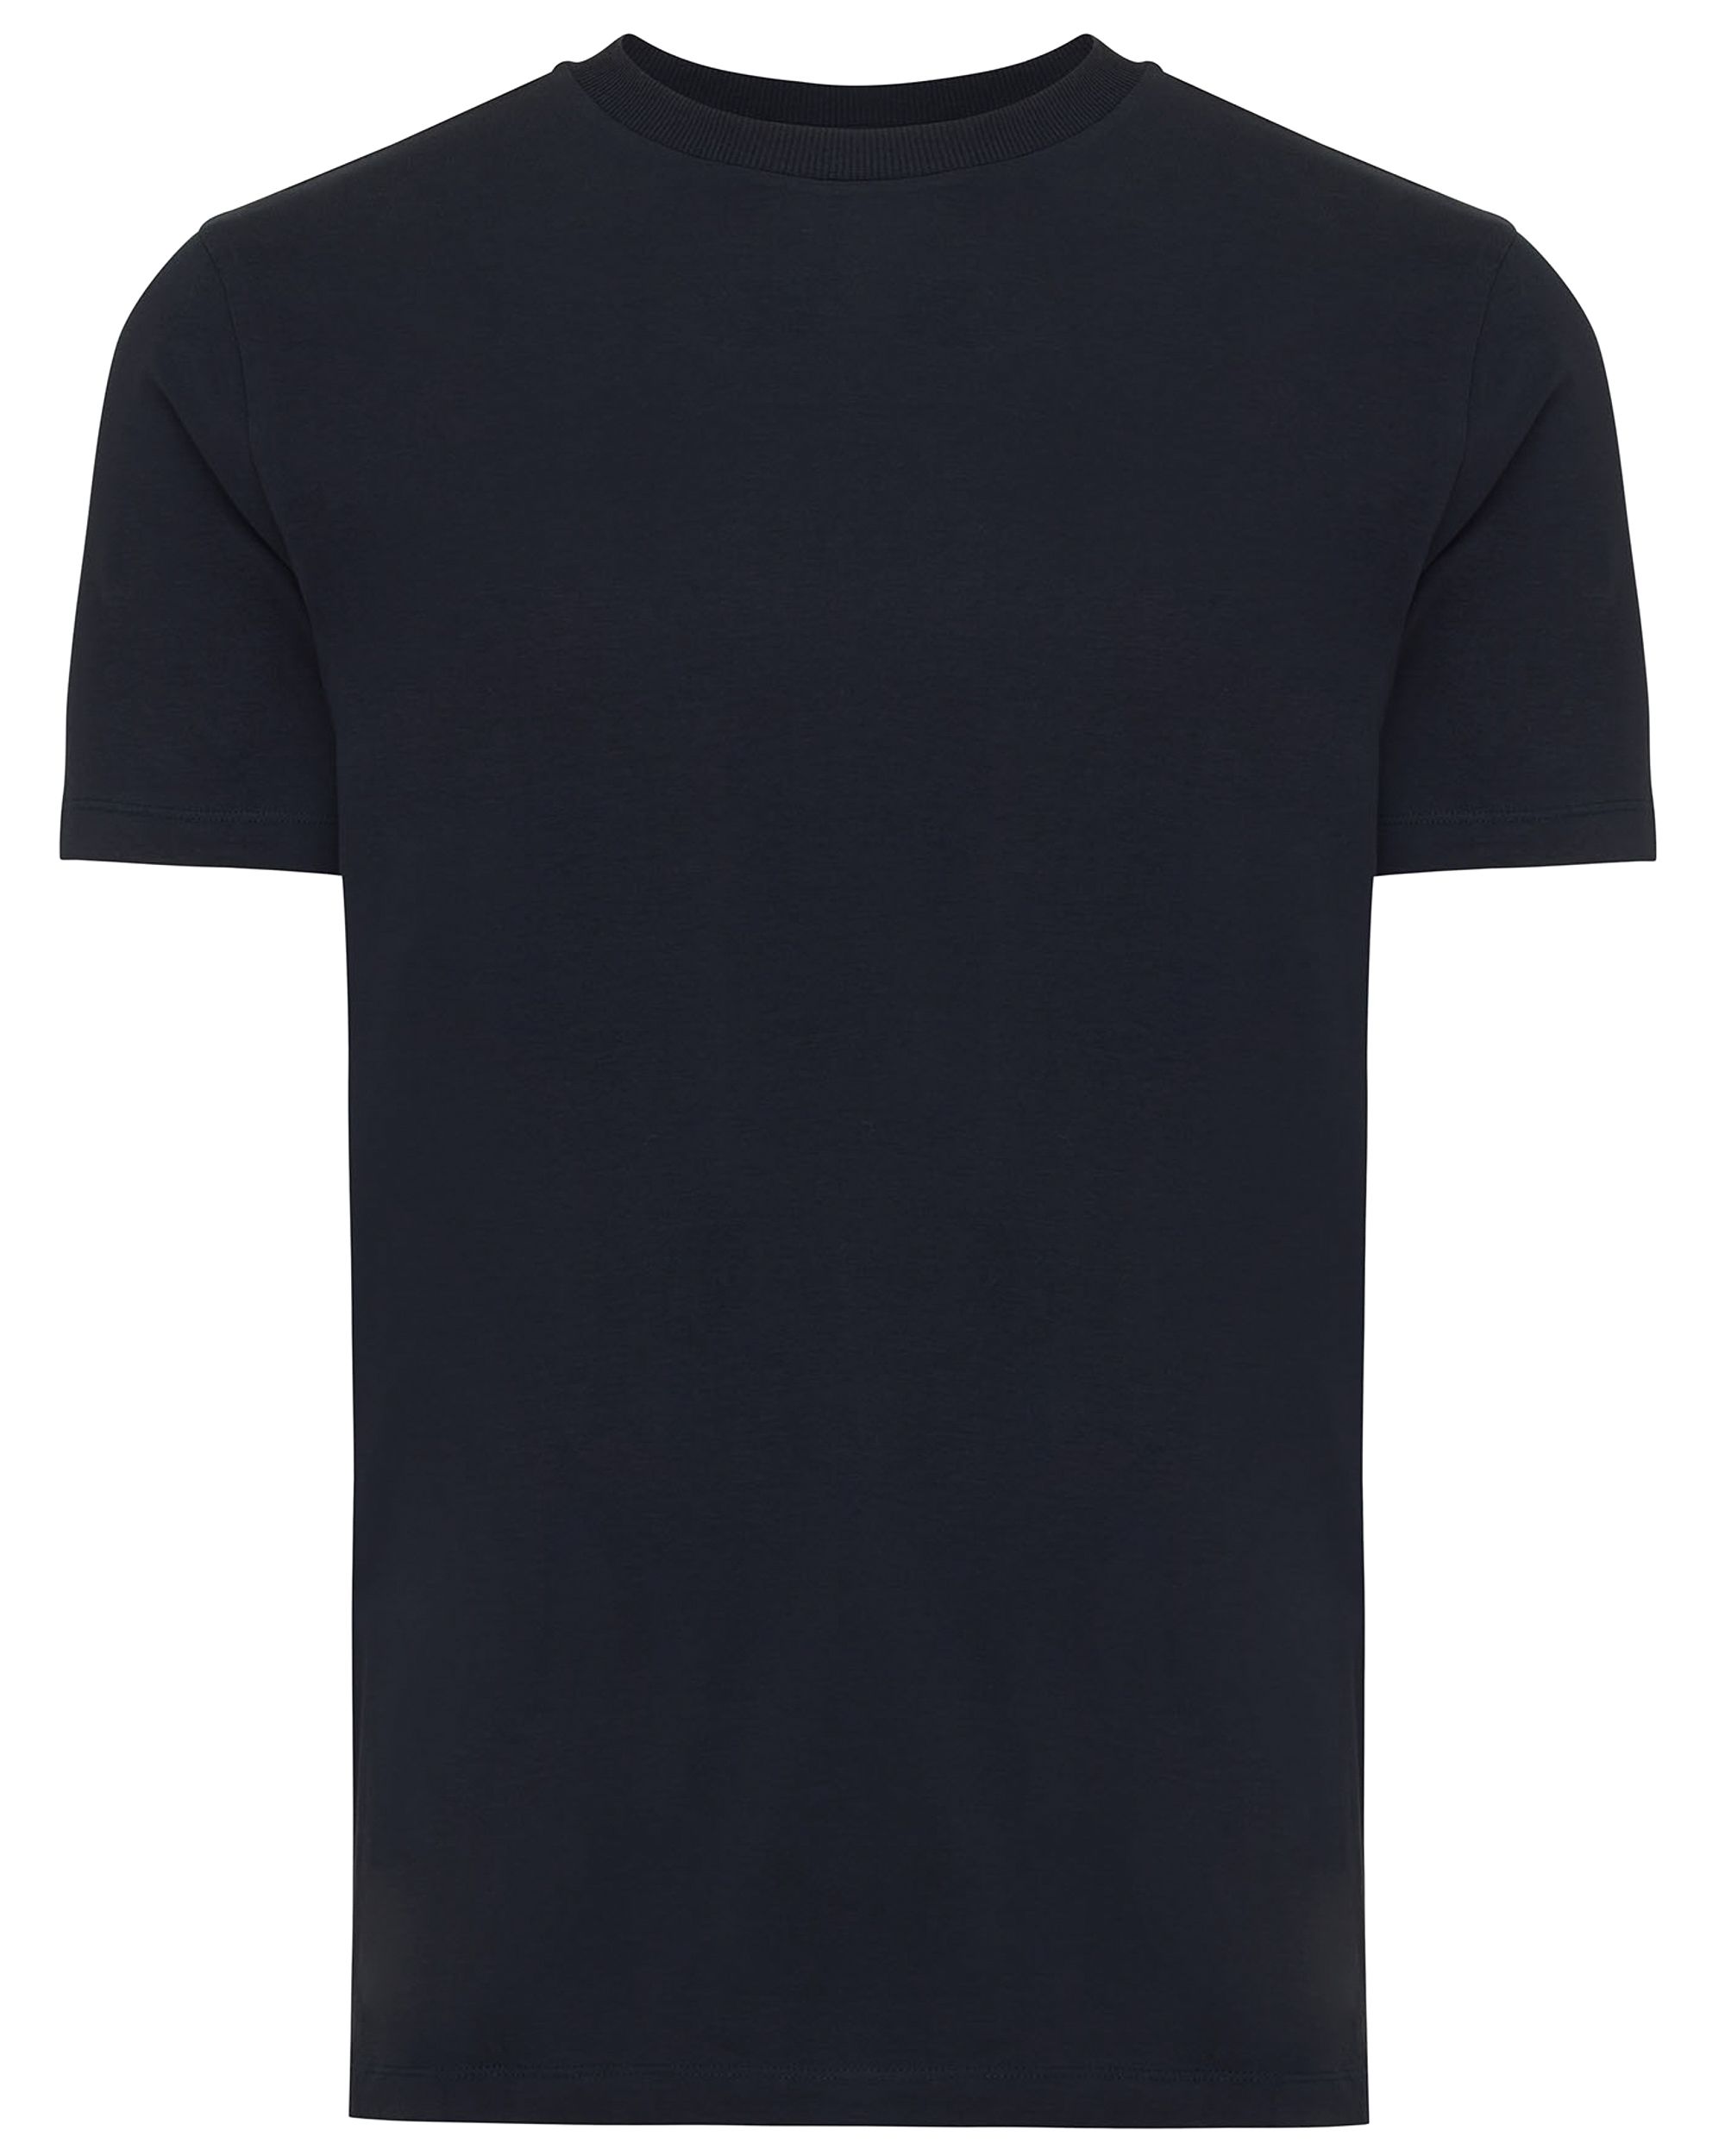 Genti T-shirt KM Donker blauw 092156-001-L